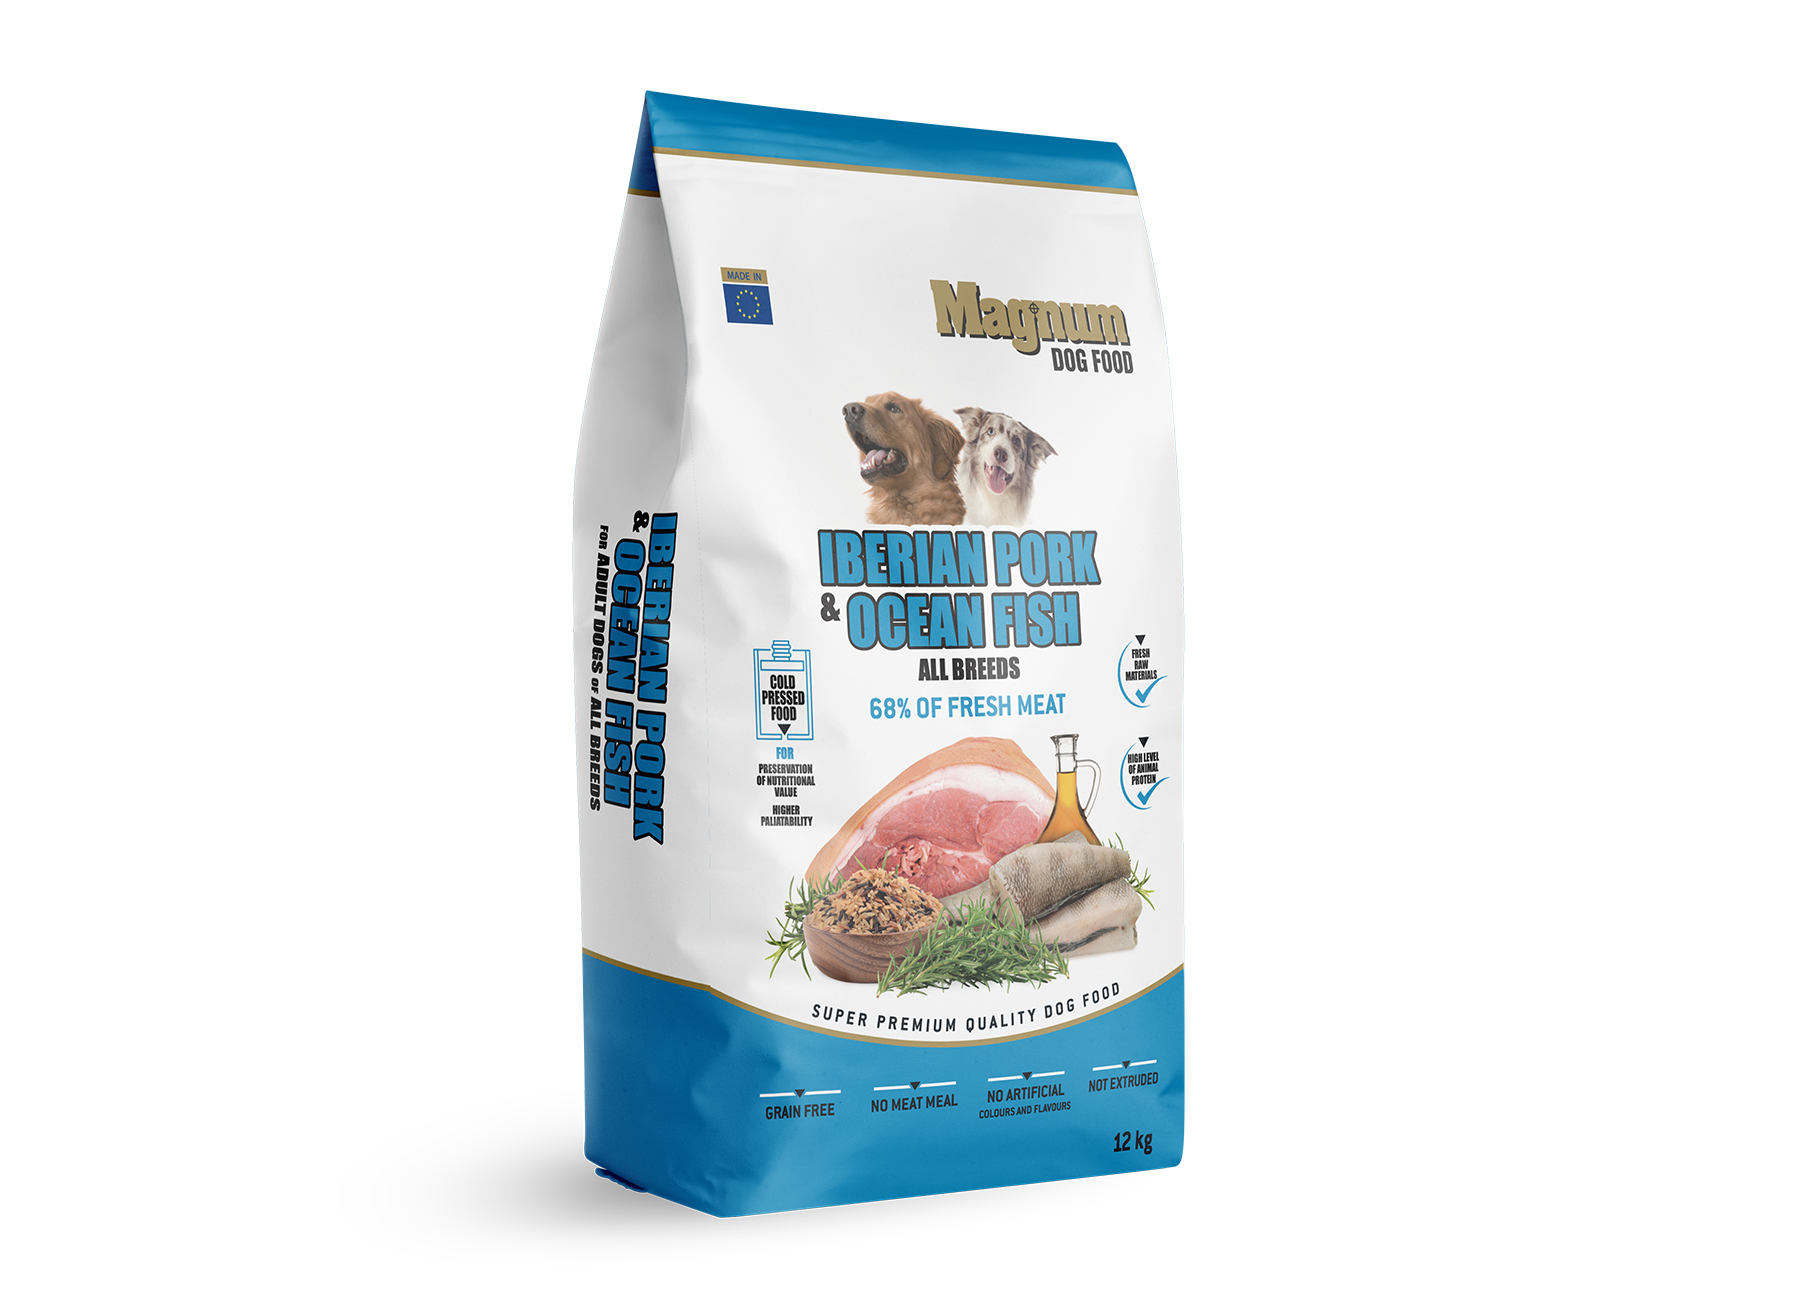 Krmivo Magnum Iberian Pork & Ocean Fish